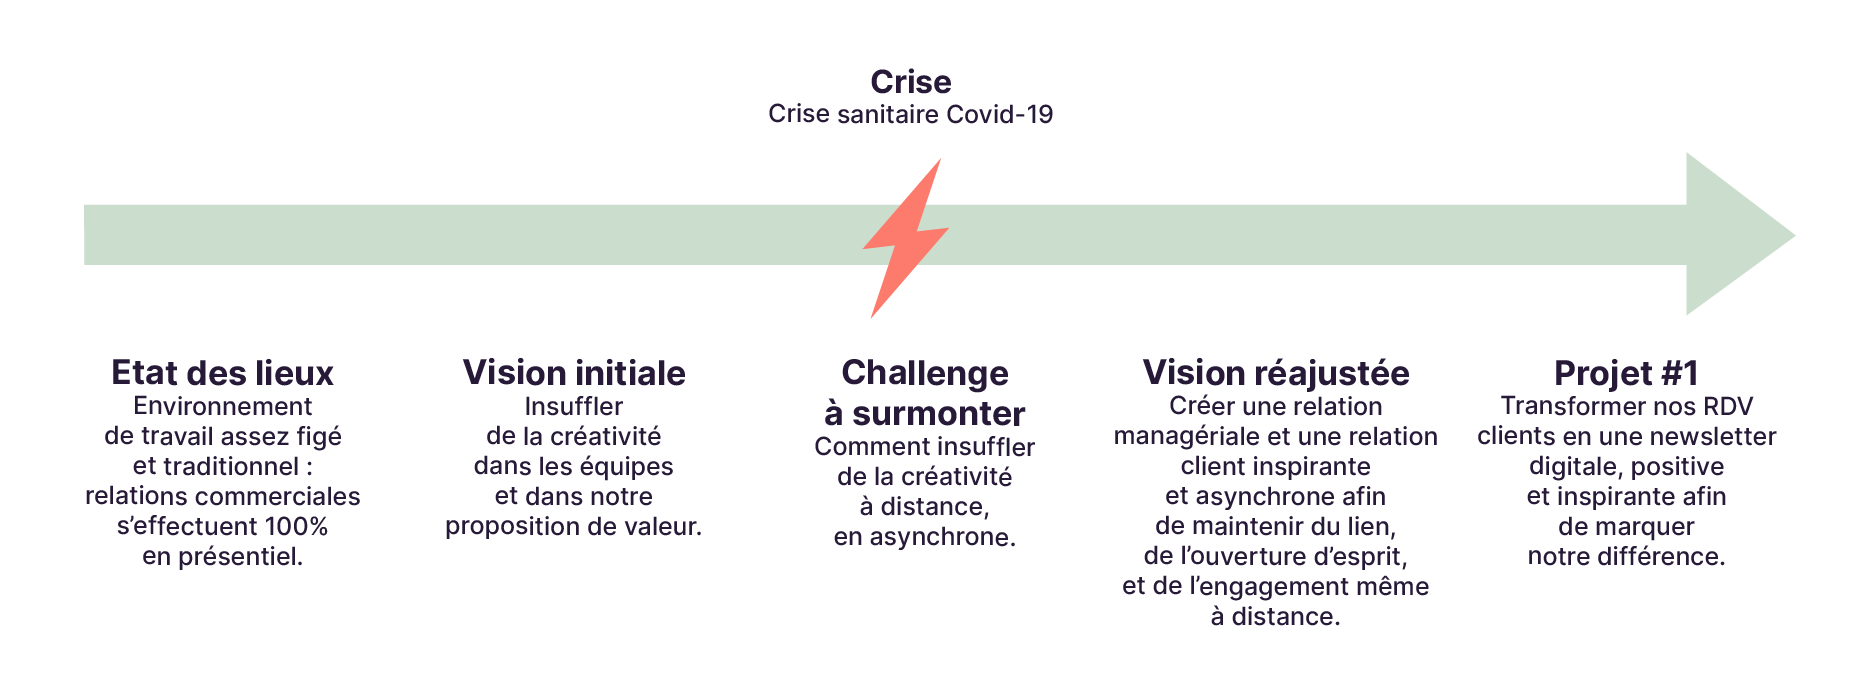 La gestion de crise se décline en 5 étapes : état des lieux, analyse de la vision initiale, challenge à surmonter, réajustement de la vision, projet construit à partir de la vision